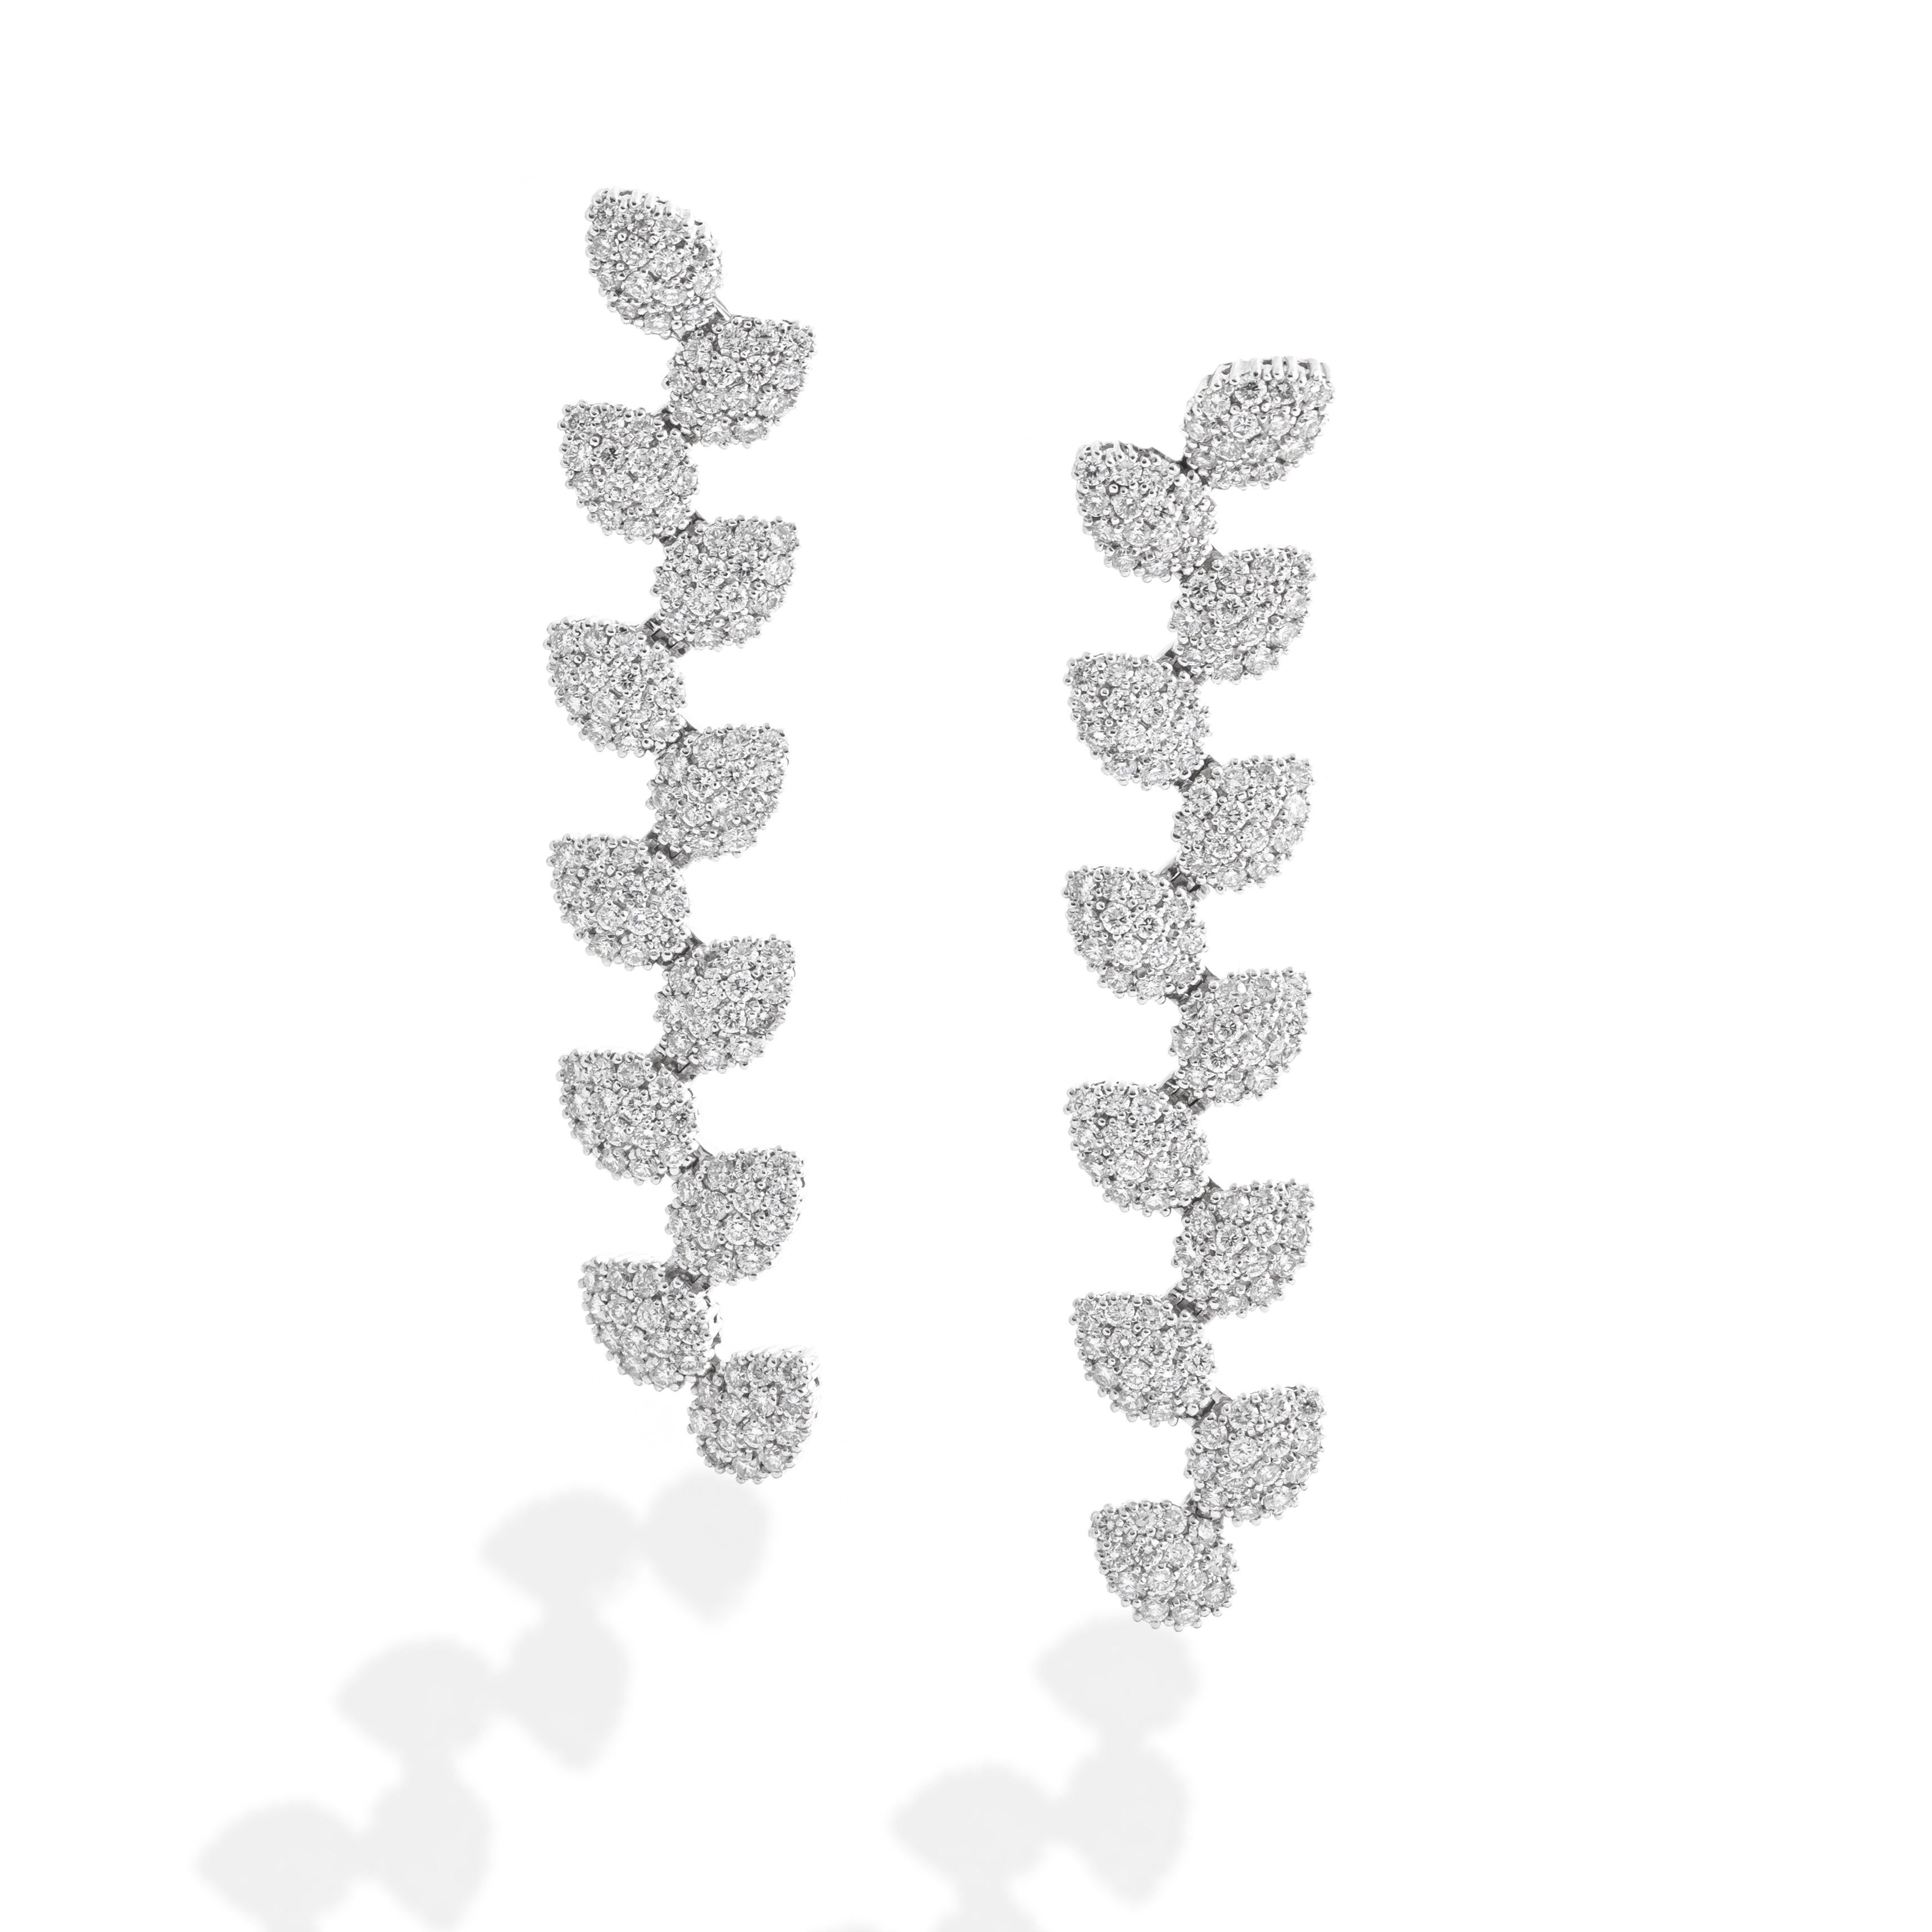 Boucles d'oreilles en diamant de Damiani. Collection S.
Environ 5 à 6 carats. Couleur estimée H.
Longueur totale : 7,00 centimètres.